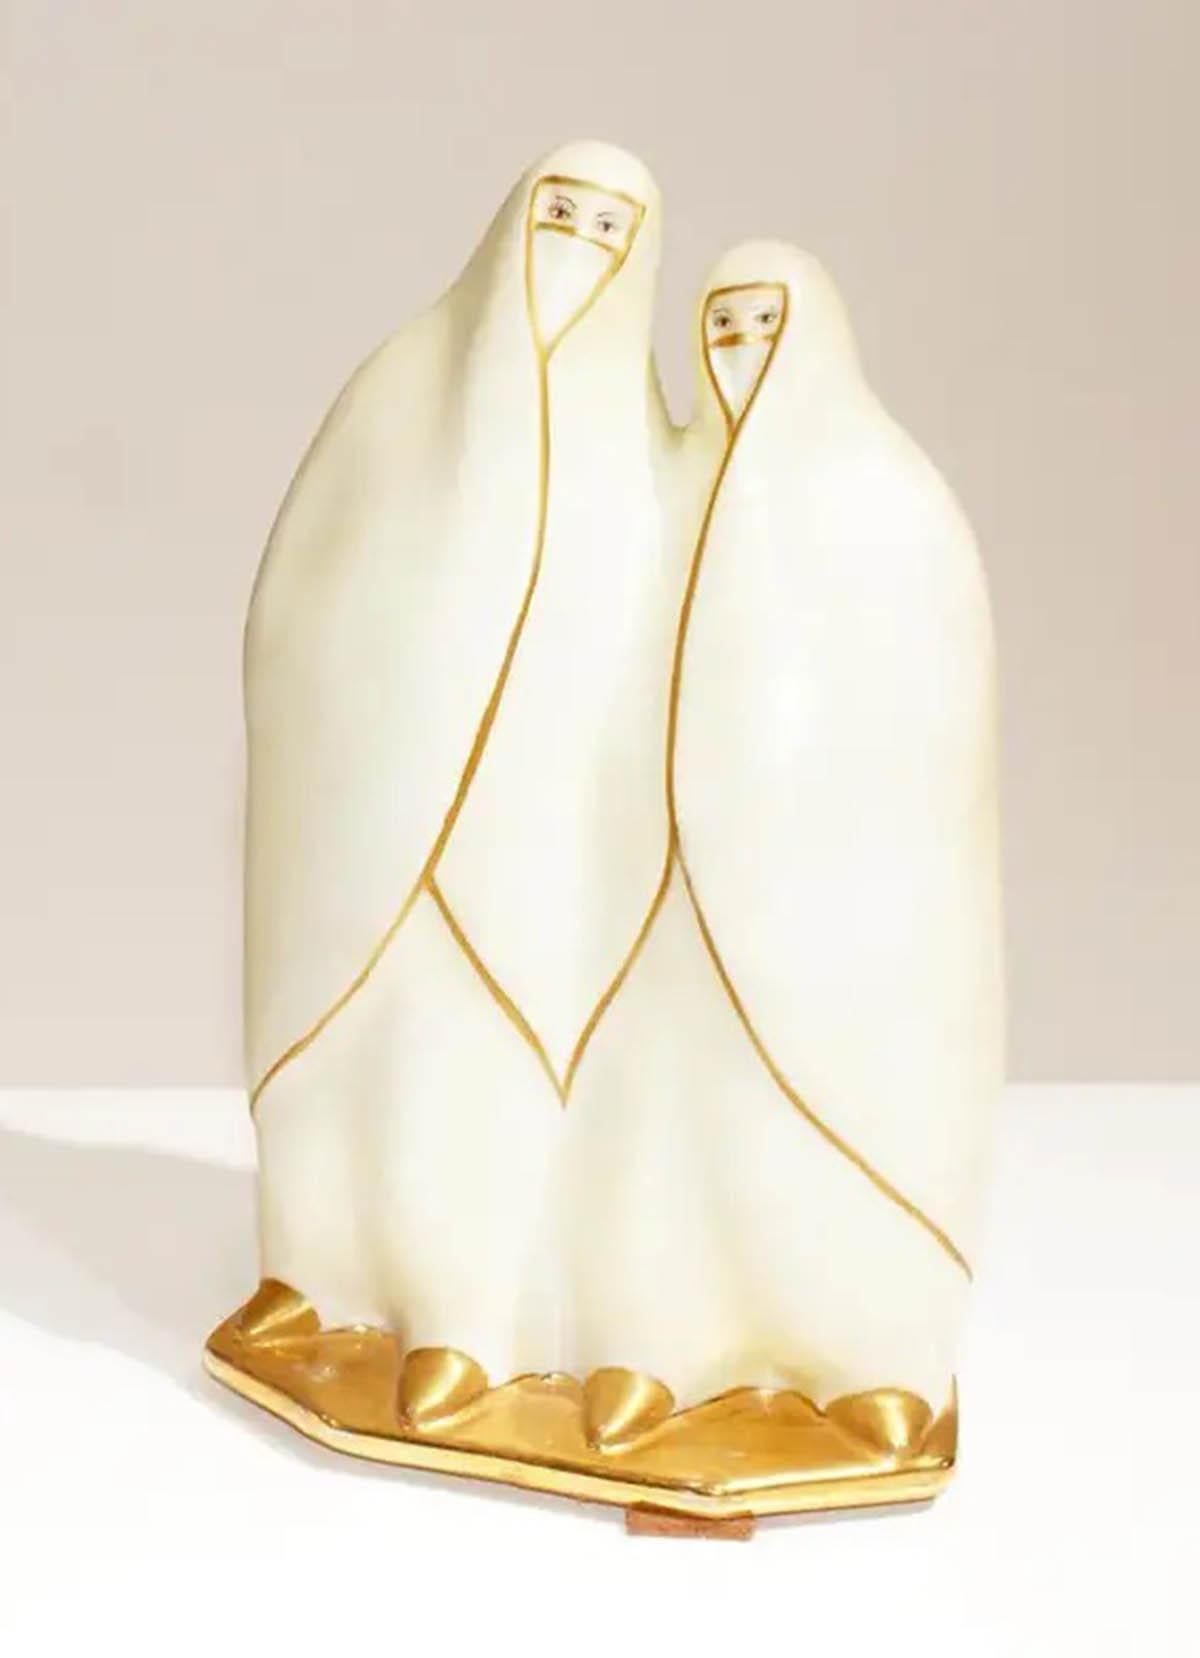 Veilleuse française Art Déco de femmes bédouines en porcelaine, avec garniture dorée. 
Très beau quand les lumières sont allumées. Signé au verso 